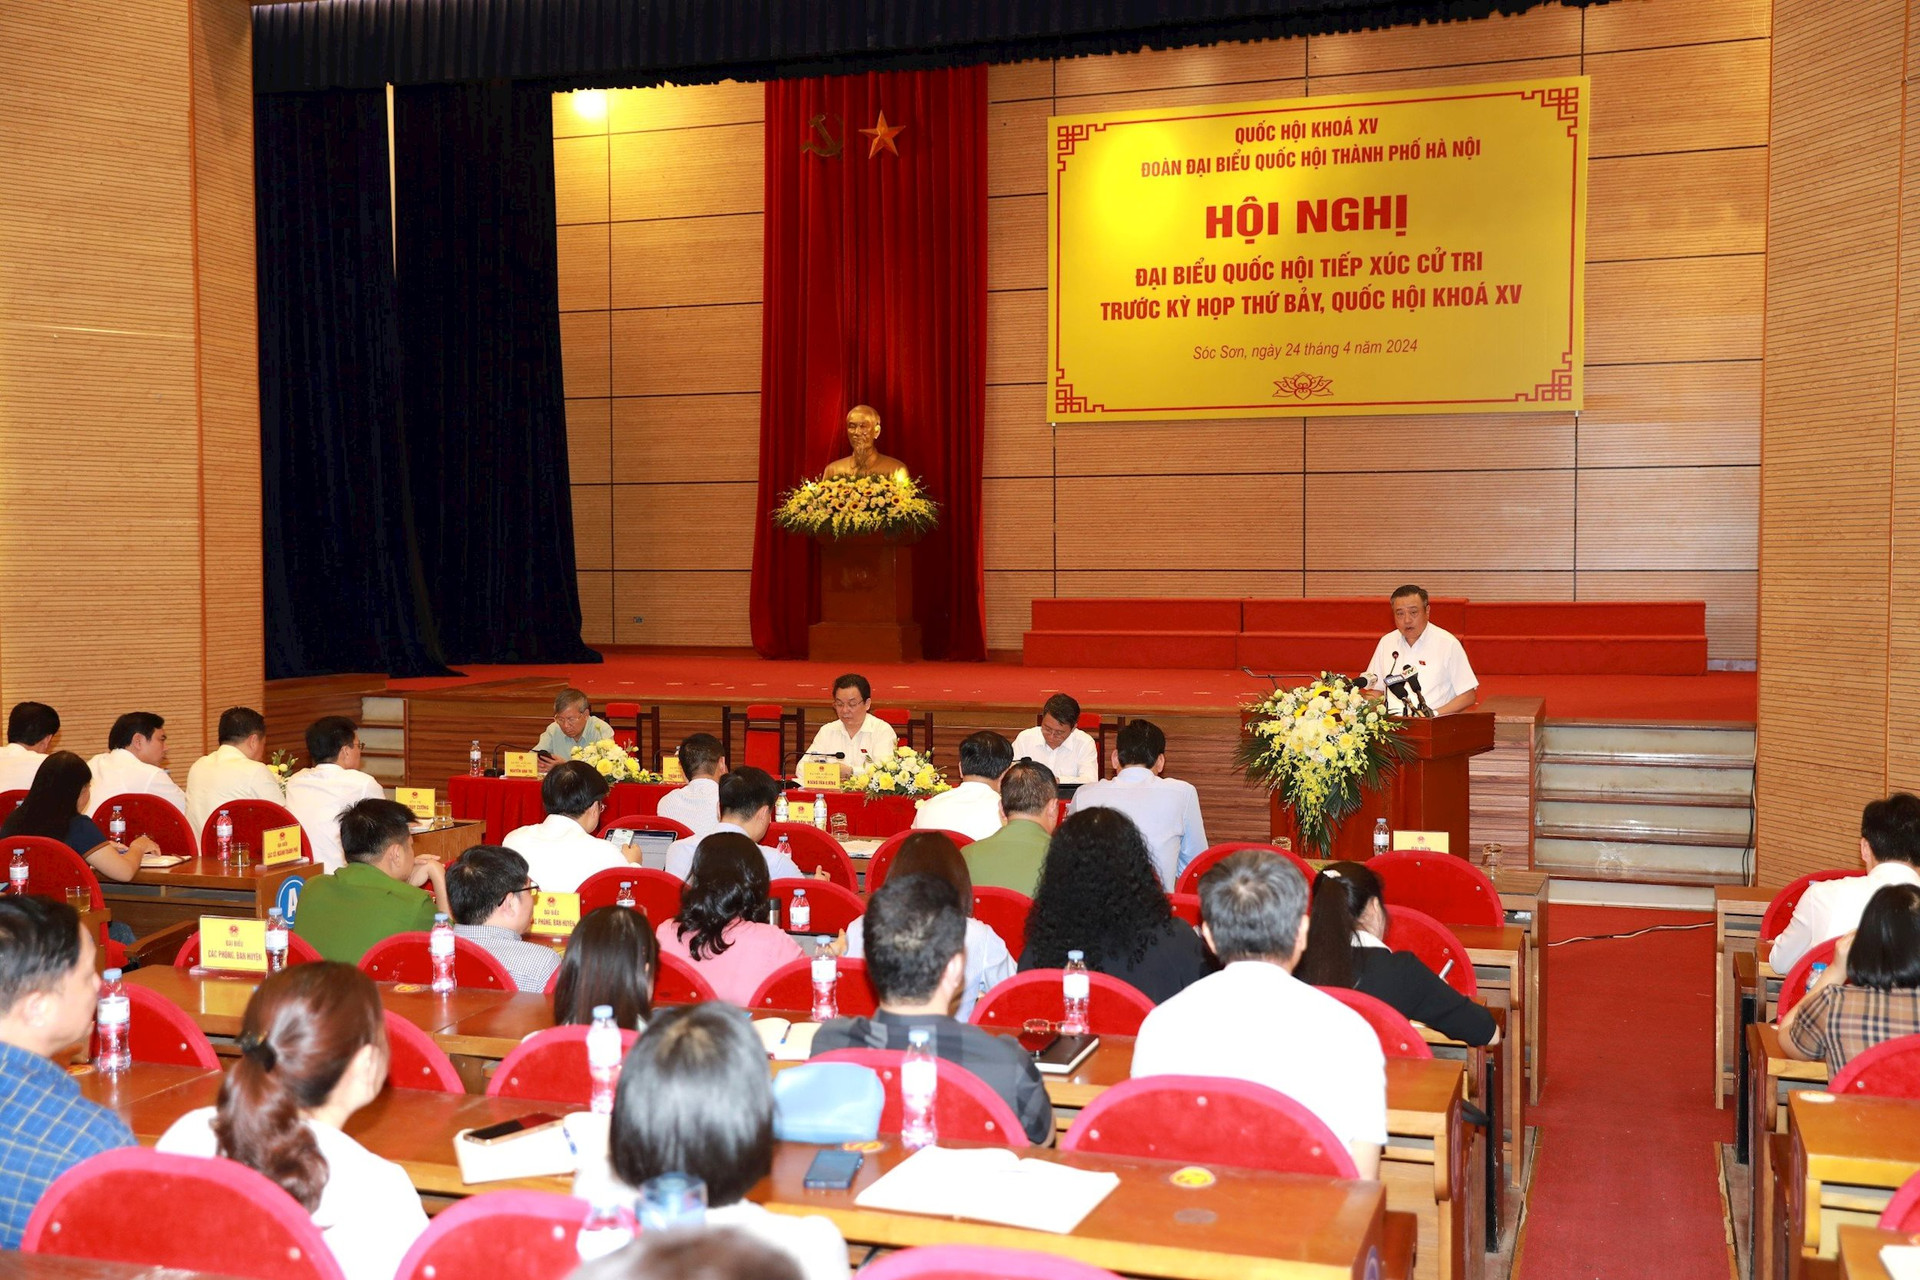 Chủ tịch Hà Nội: Cán bộ không được lợi dụng chính sách để làm ẩu- Ảnh 2.